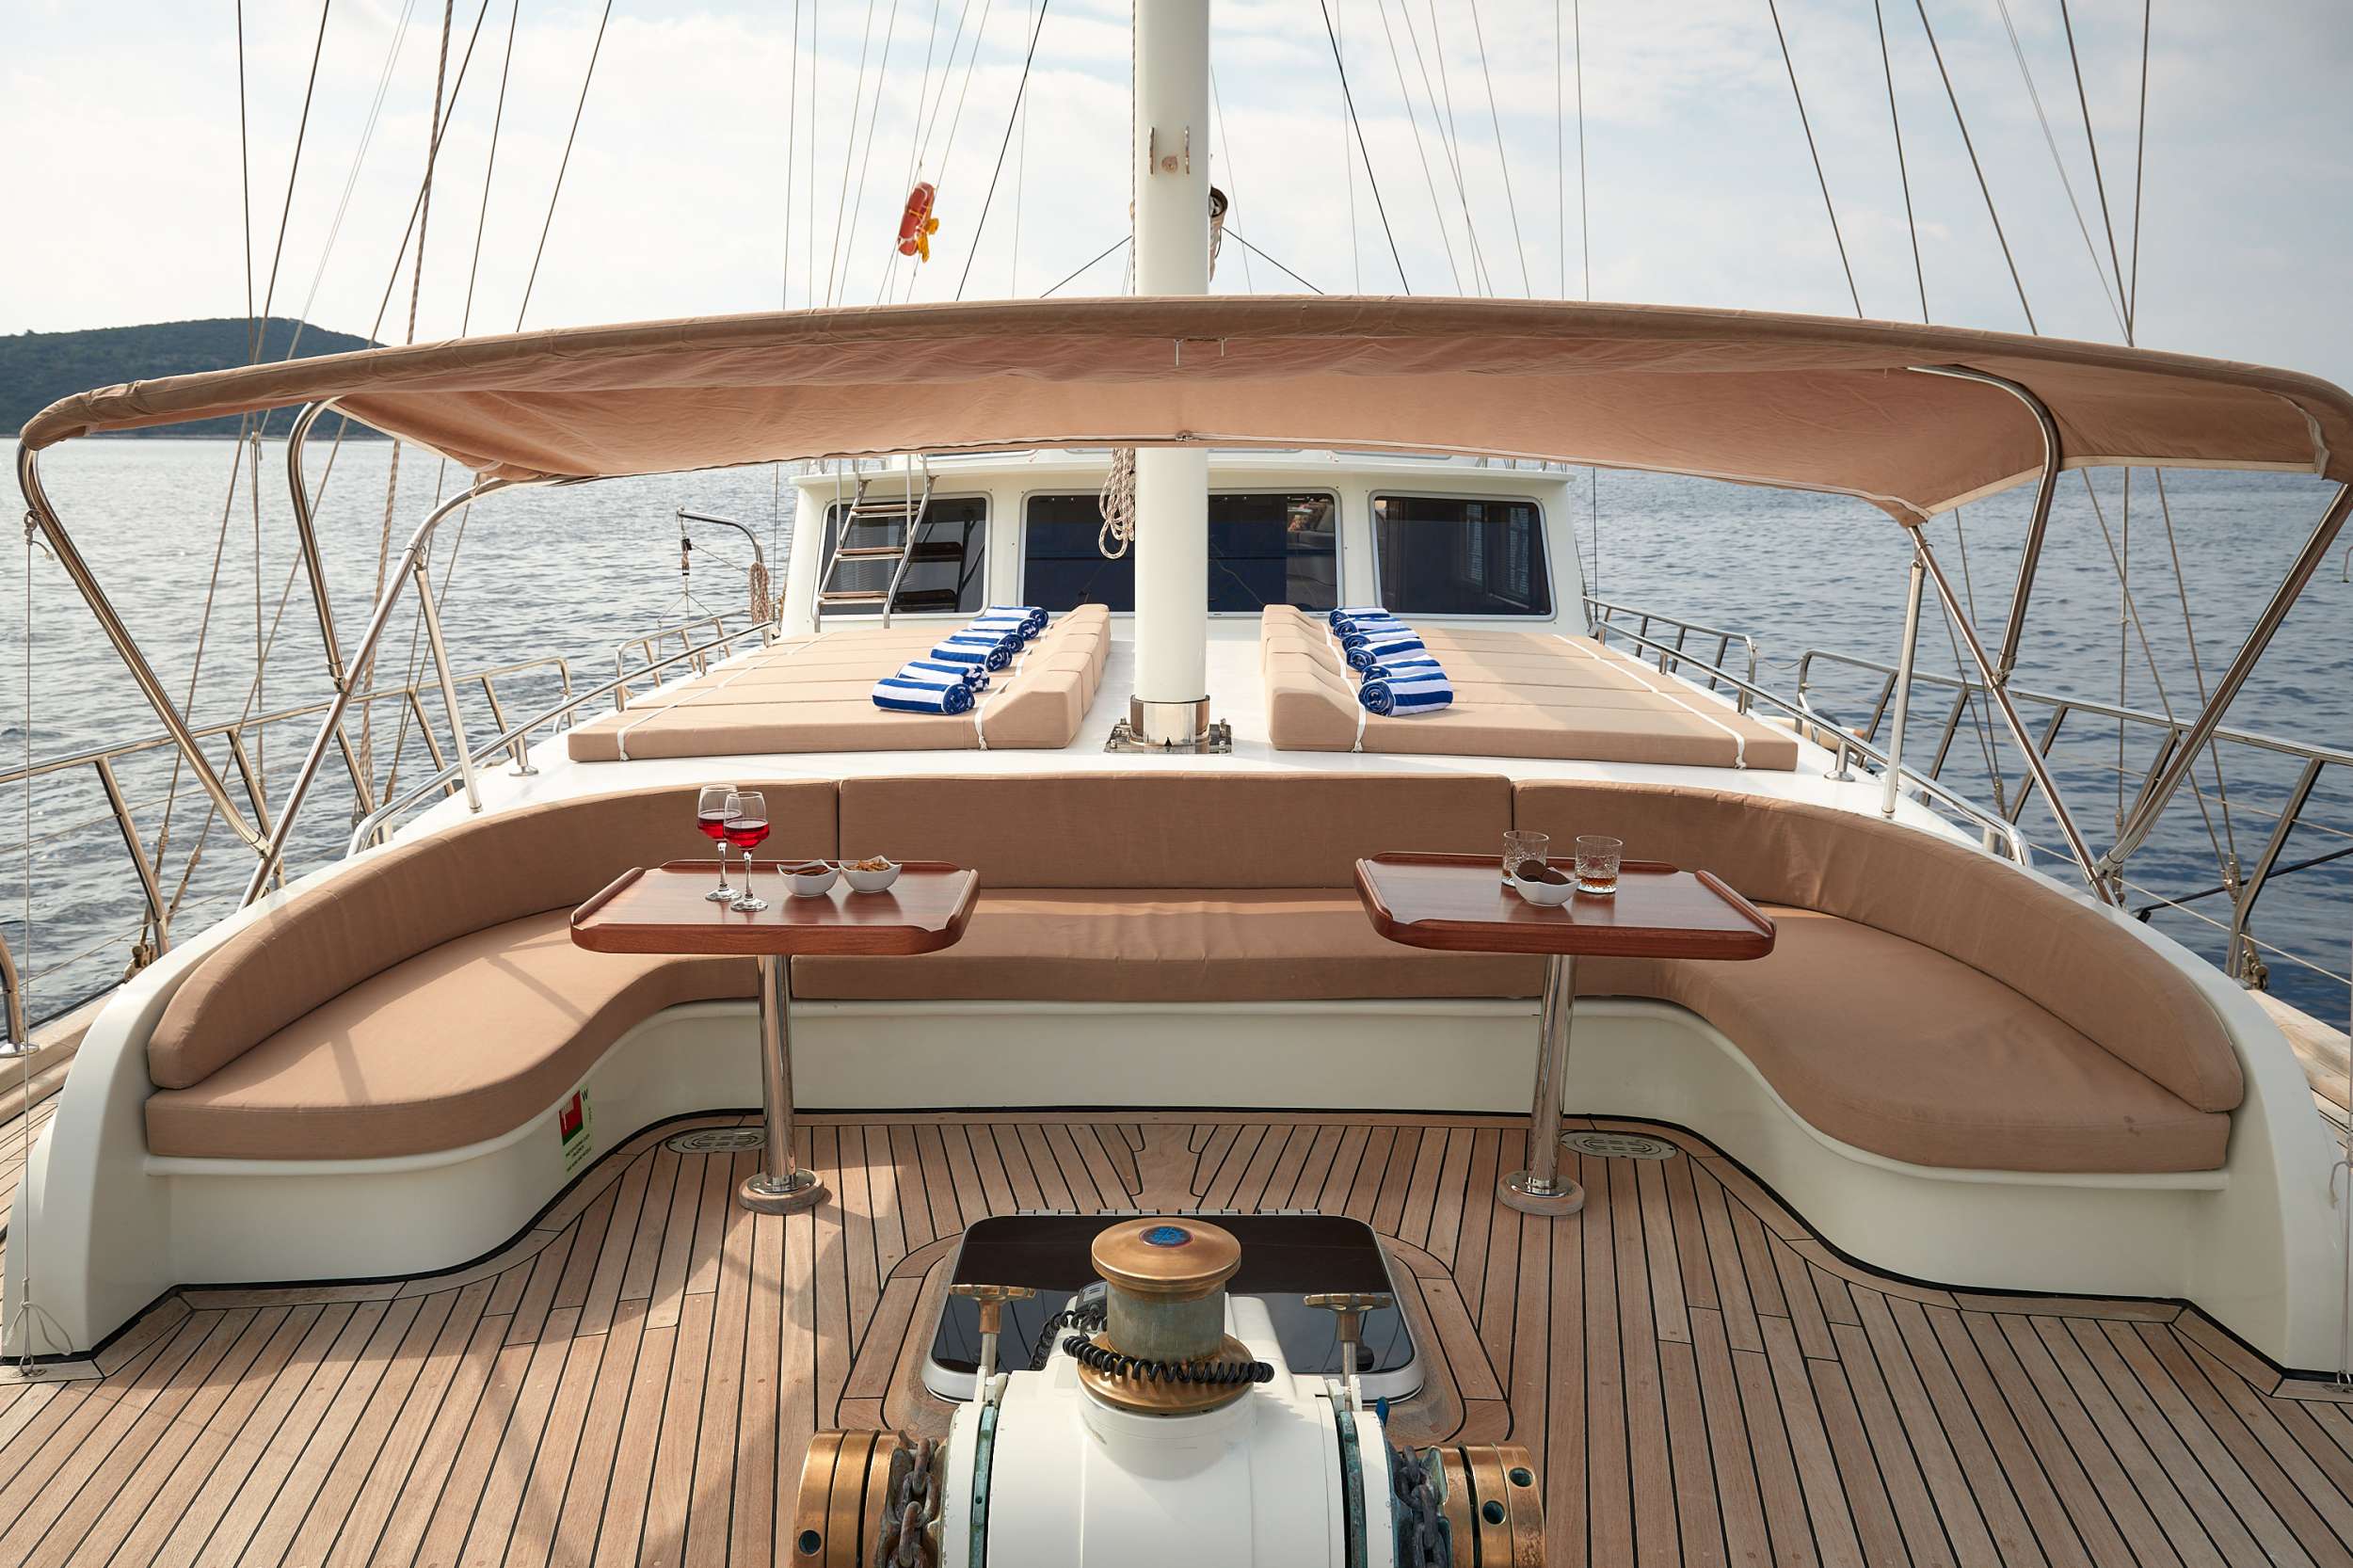 SEA BREEZE - Yacht Charter Zaton & Boat hire in Croatia 5